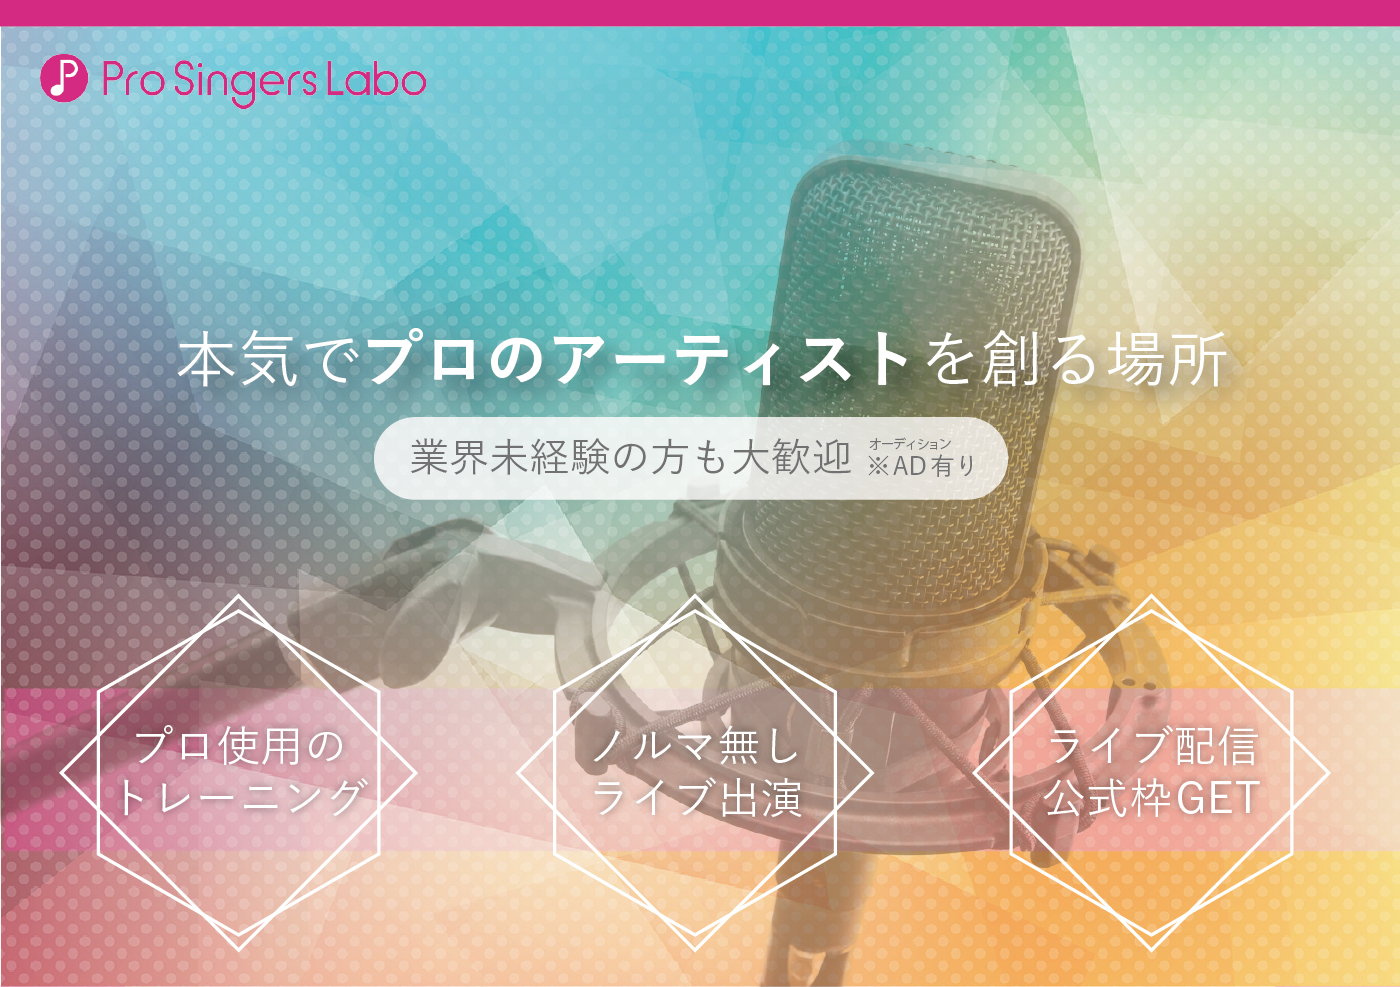 月額3.3万円(税込)で最短デビューできる歌手養成スクールならPro singer labo